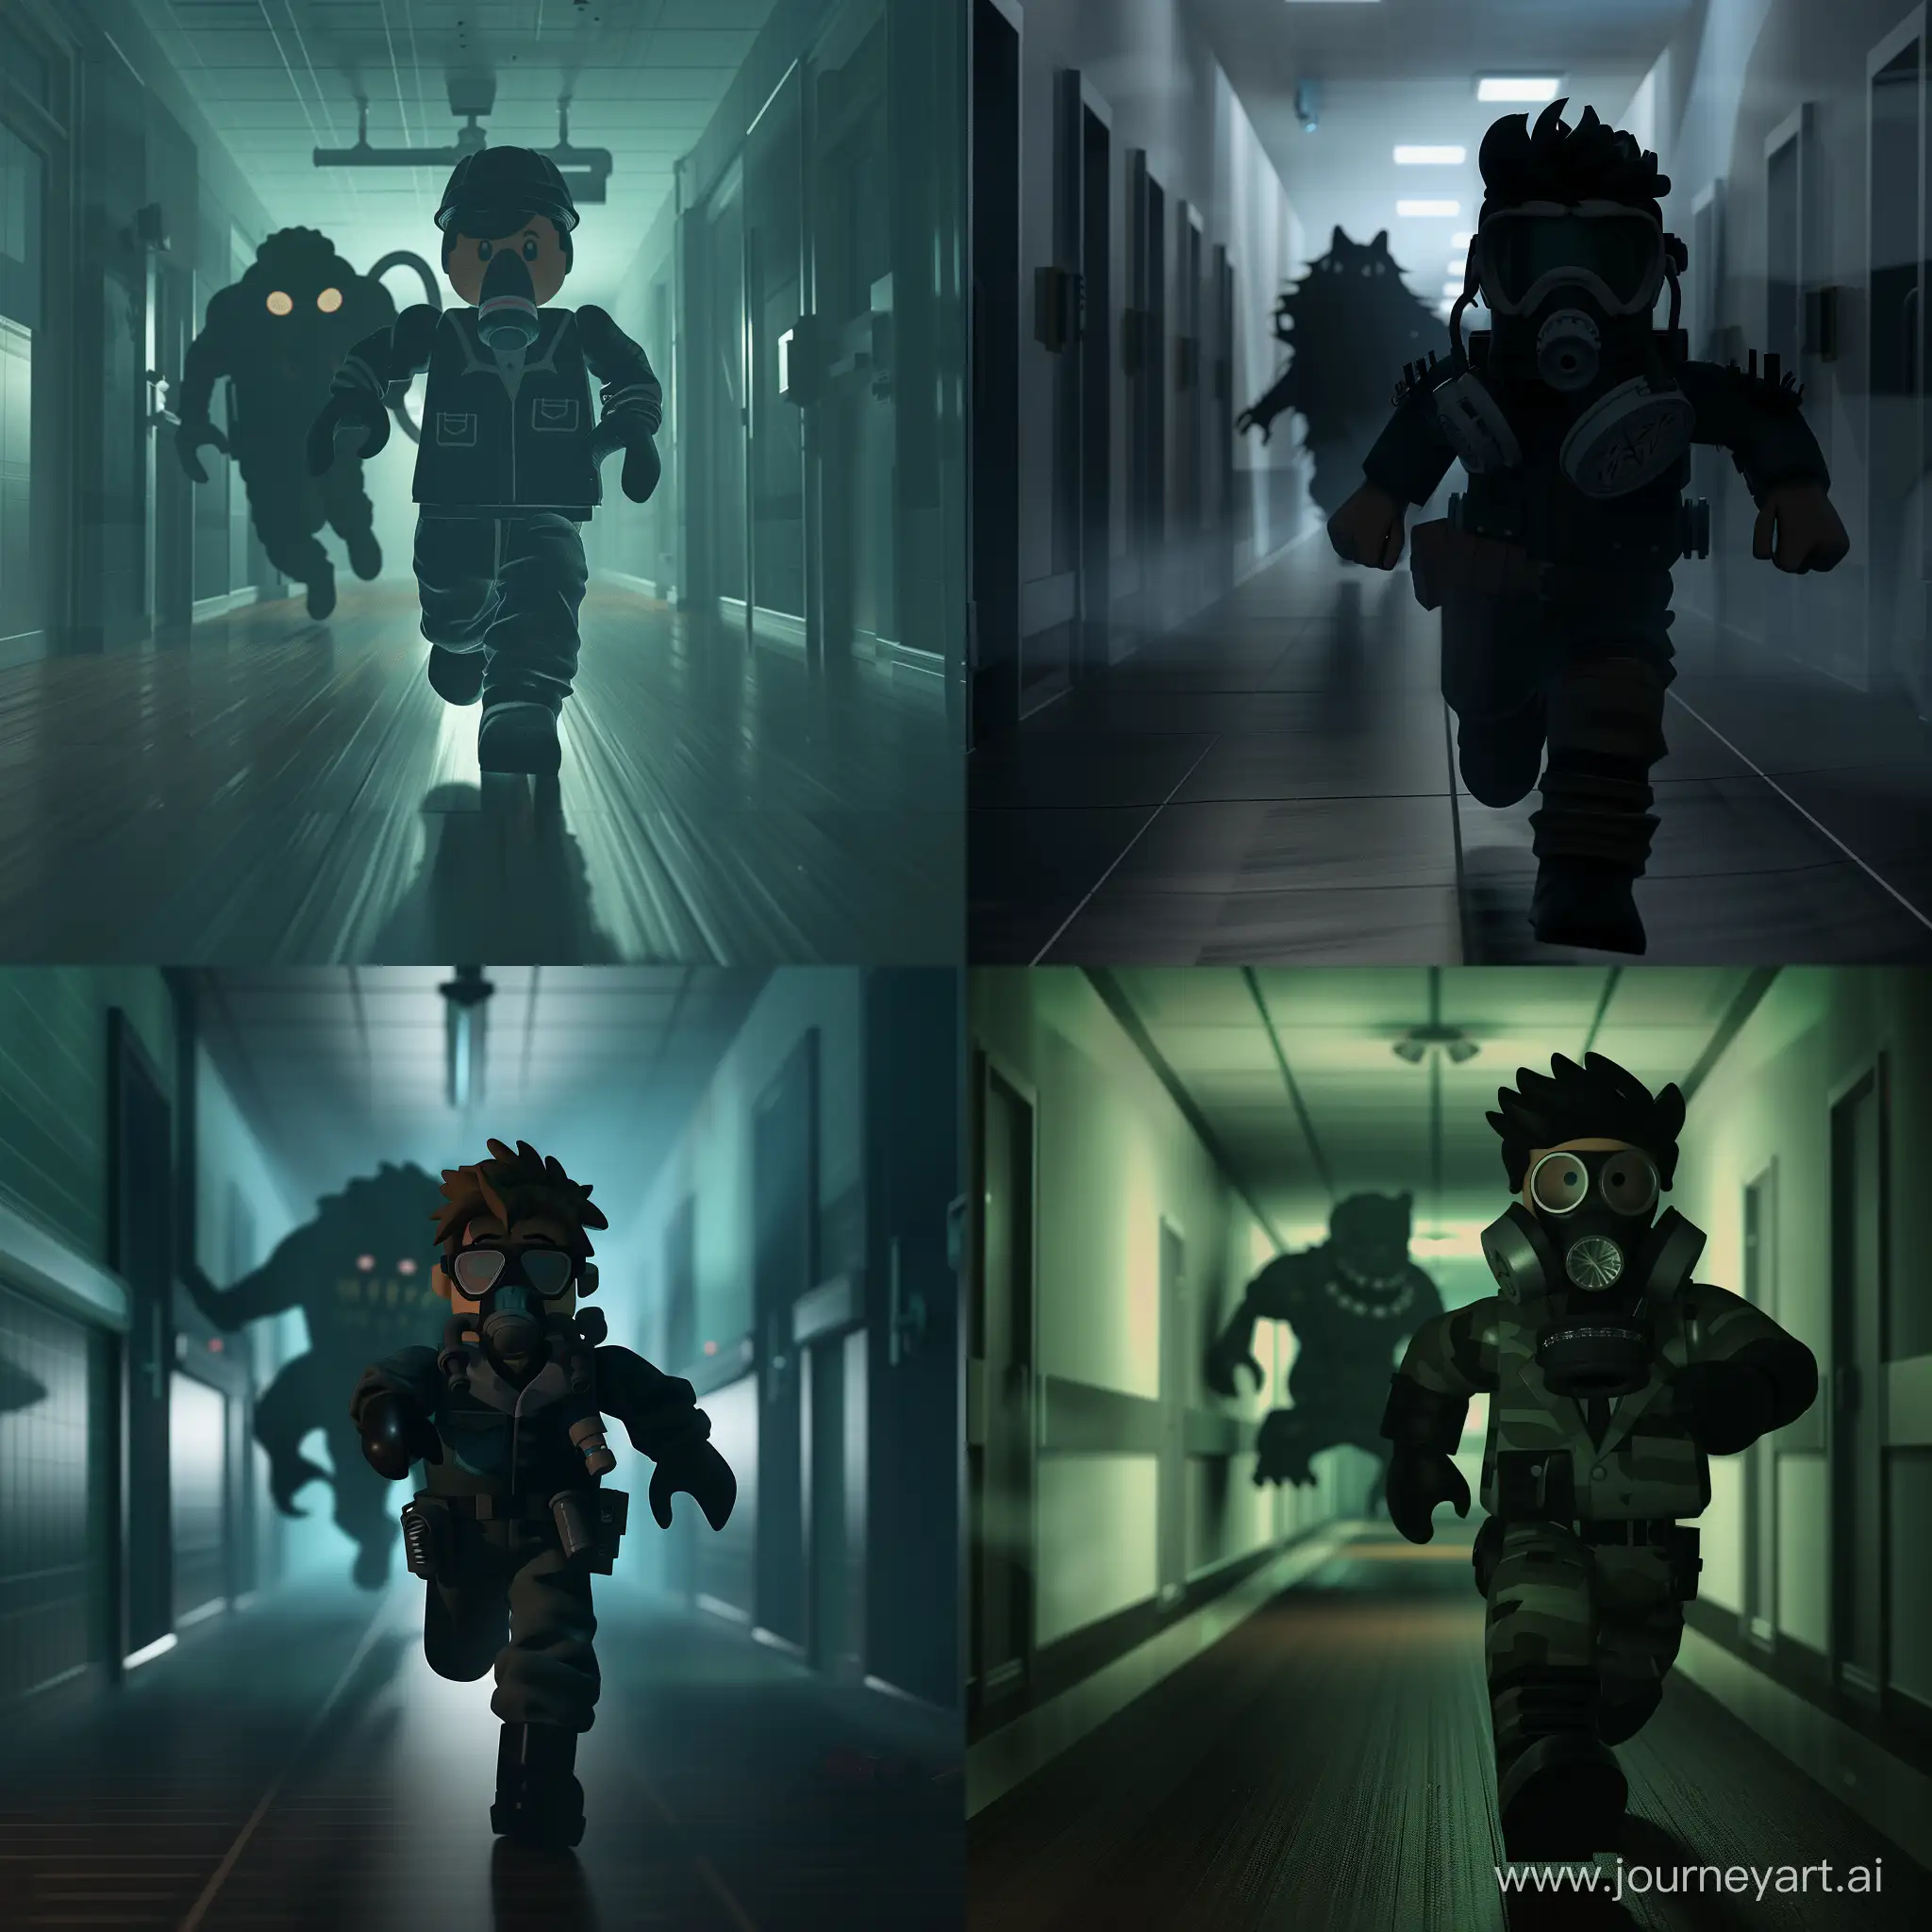 Un avatar de Roblox con un traje de científico y una máscara de gas está corriendo por un pasillo oscuro. Detrás de él, se puede ver la silueta de un SCP-173 persiguiéndolo.